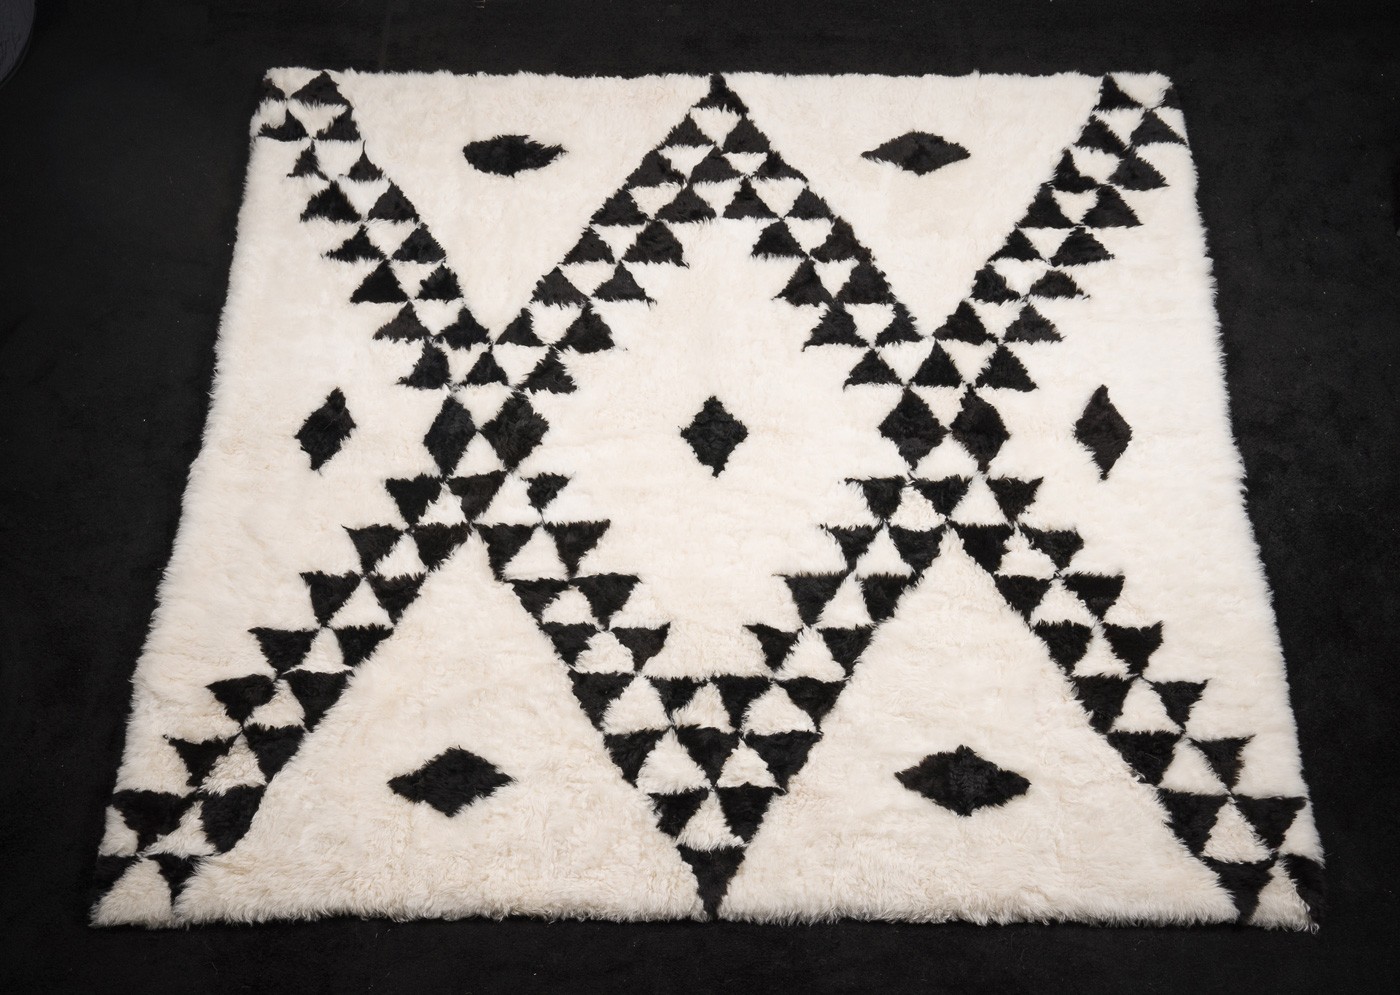 Le tapis Berbère en mouton affiche un parti-pris assumé, mettant en avant des motifs berbères symboliques. Ces motifs traditionnels sont tissés depuis des générations en Afrique du Nord, où la domestication du mouton joue un rôle clé dans l'art du tapis berbère.